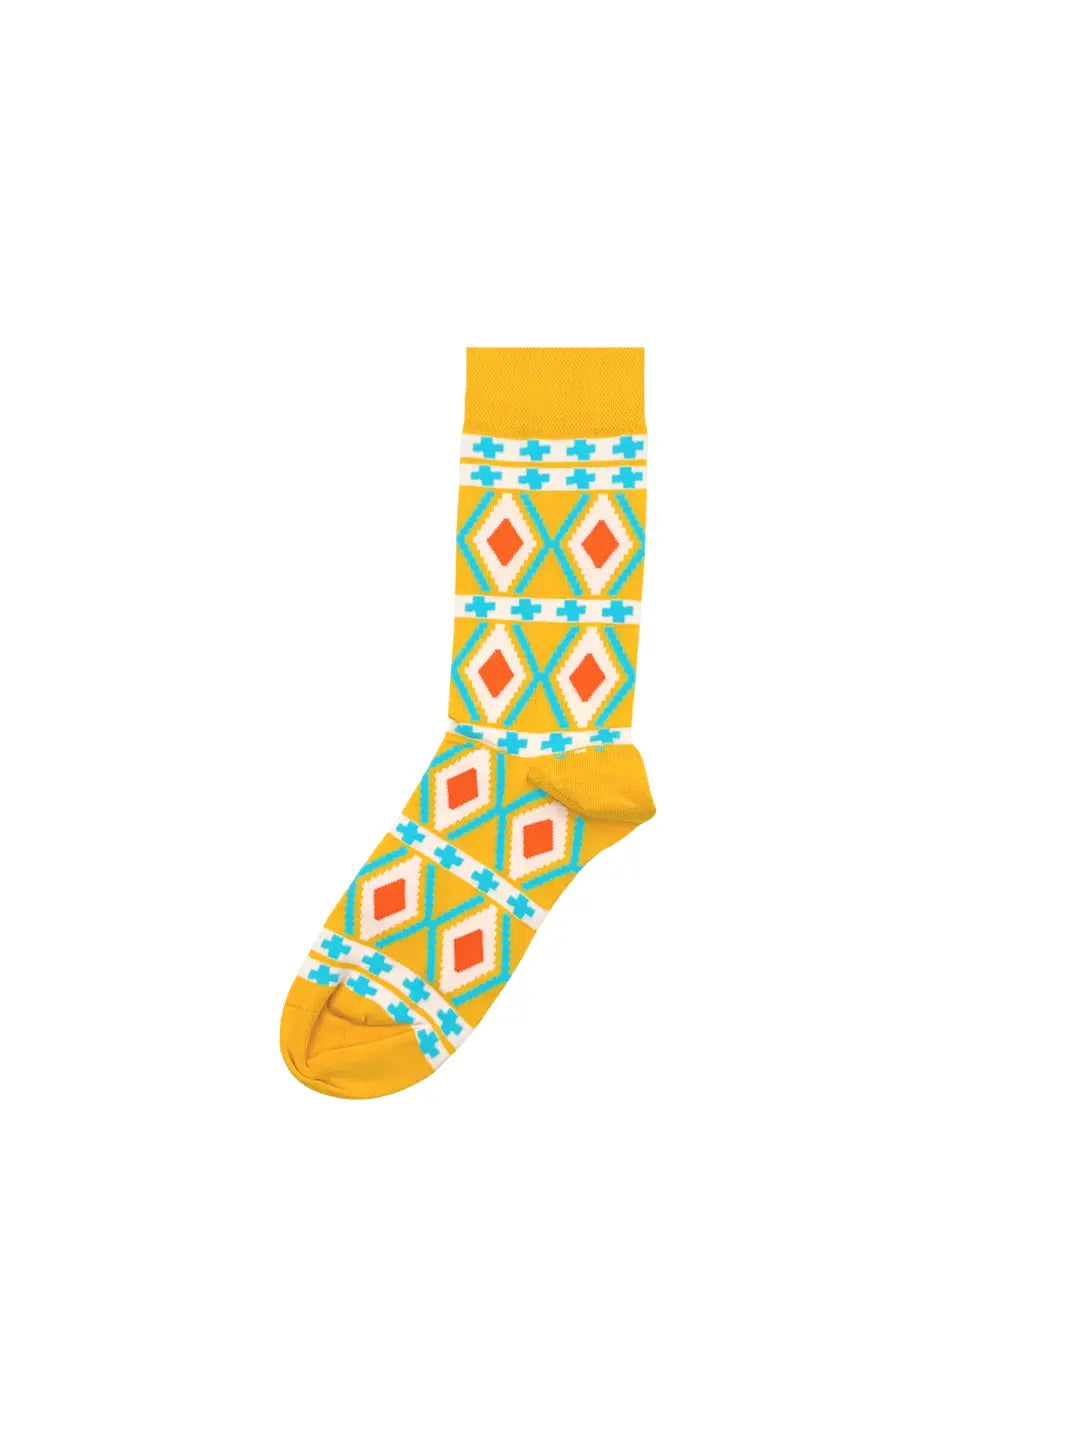 Afropop Socks - Nomad